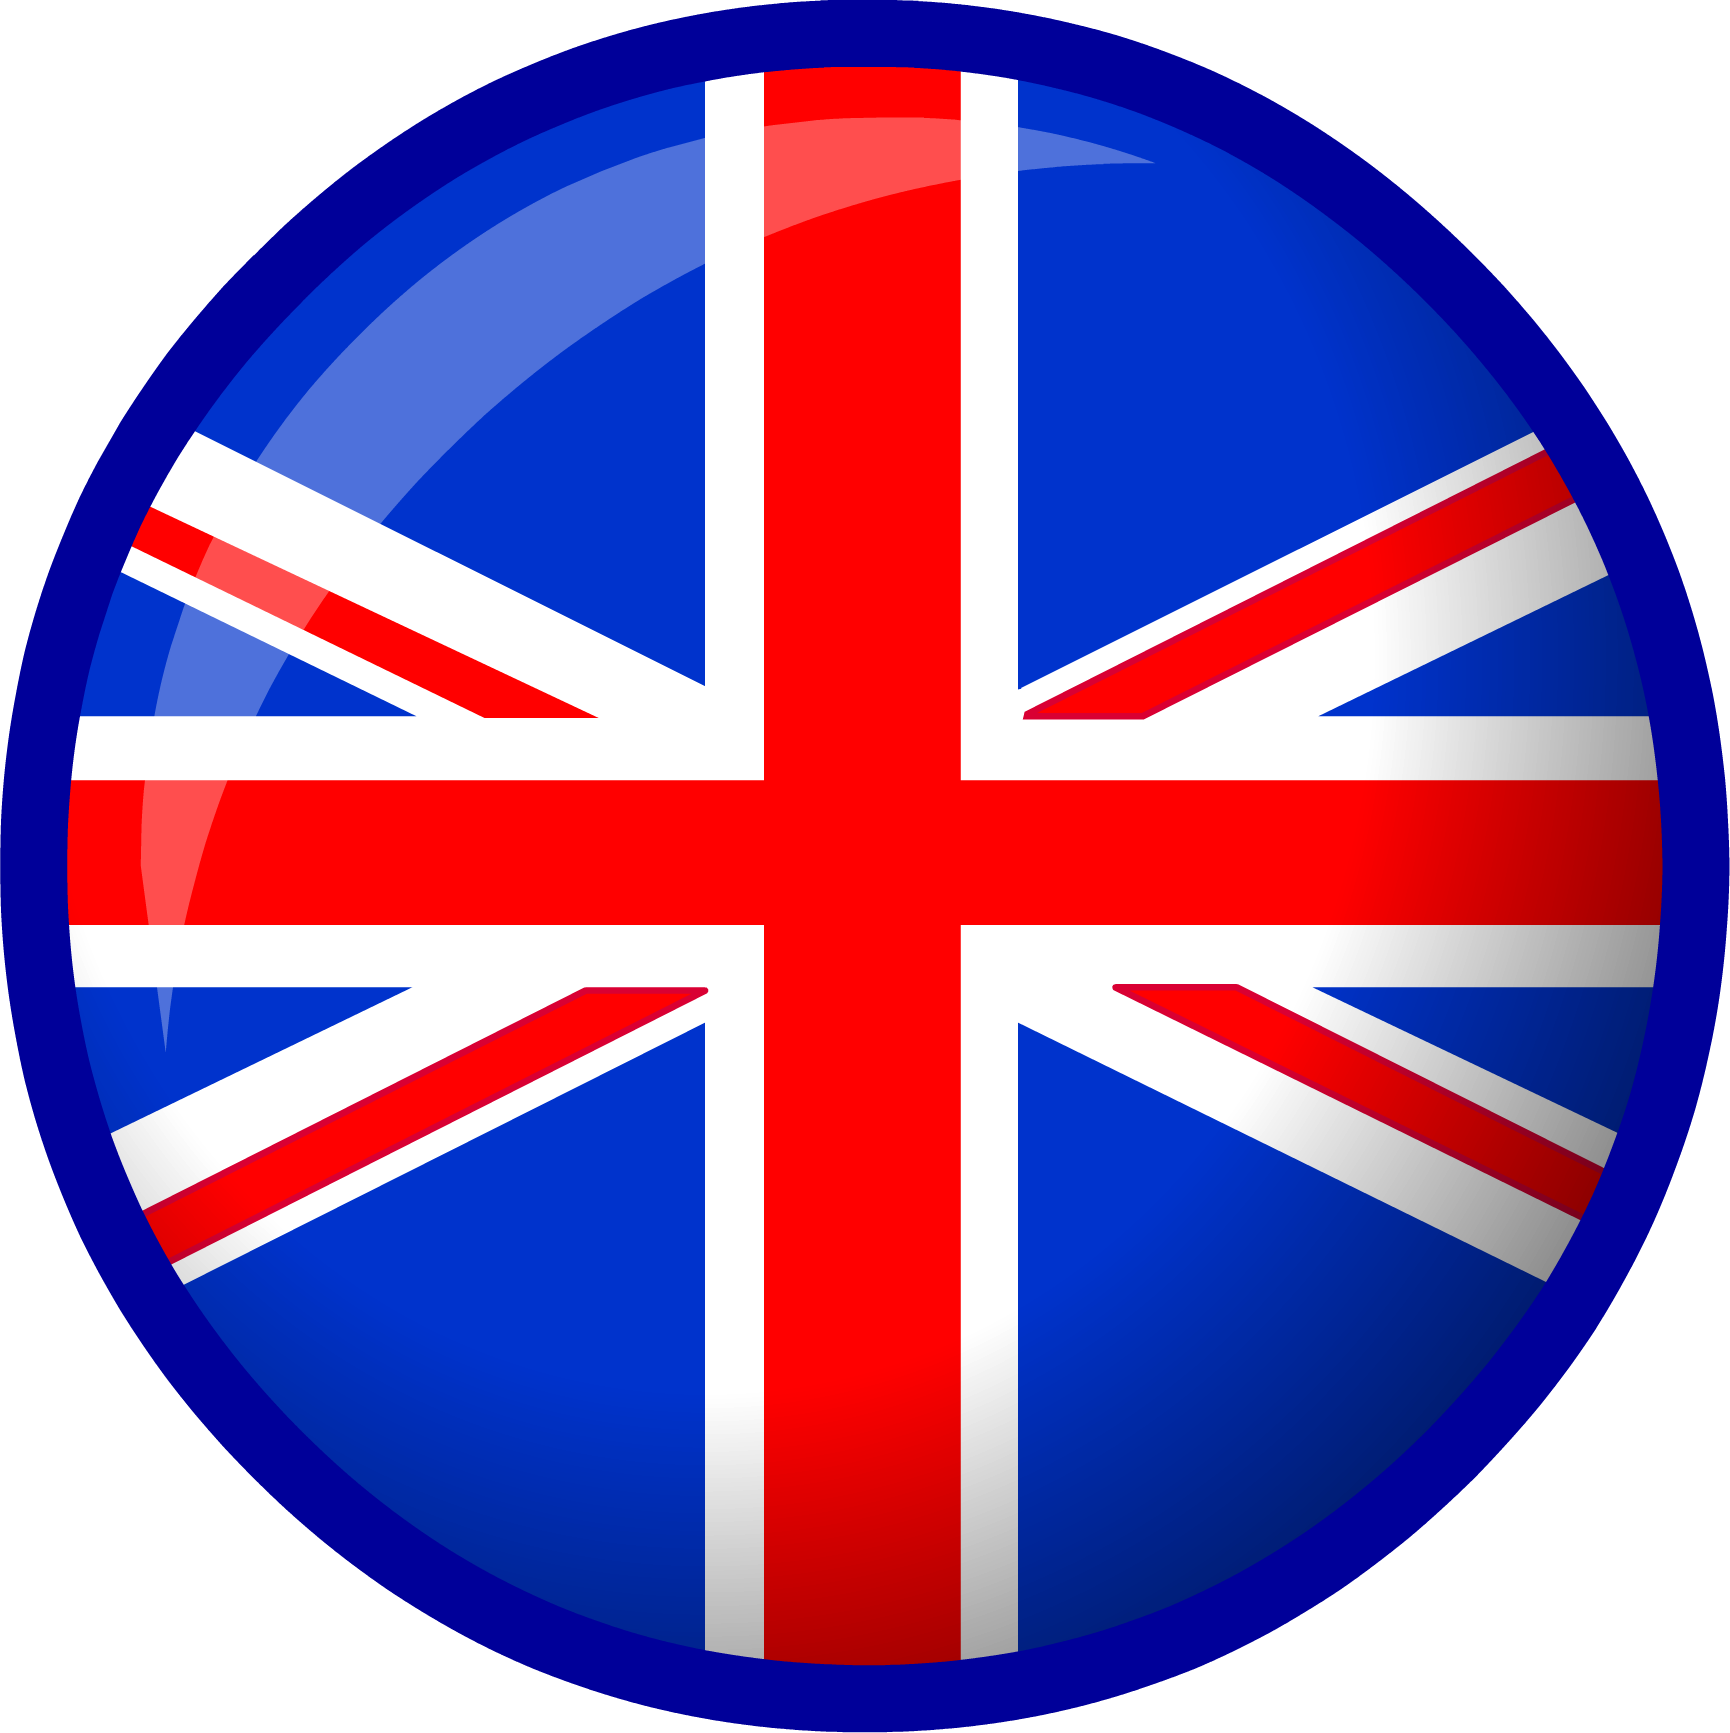 United Kingdom flag | Club Penguin Wiki | Fandom powered by Wikia